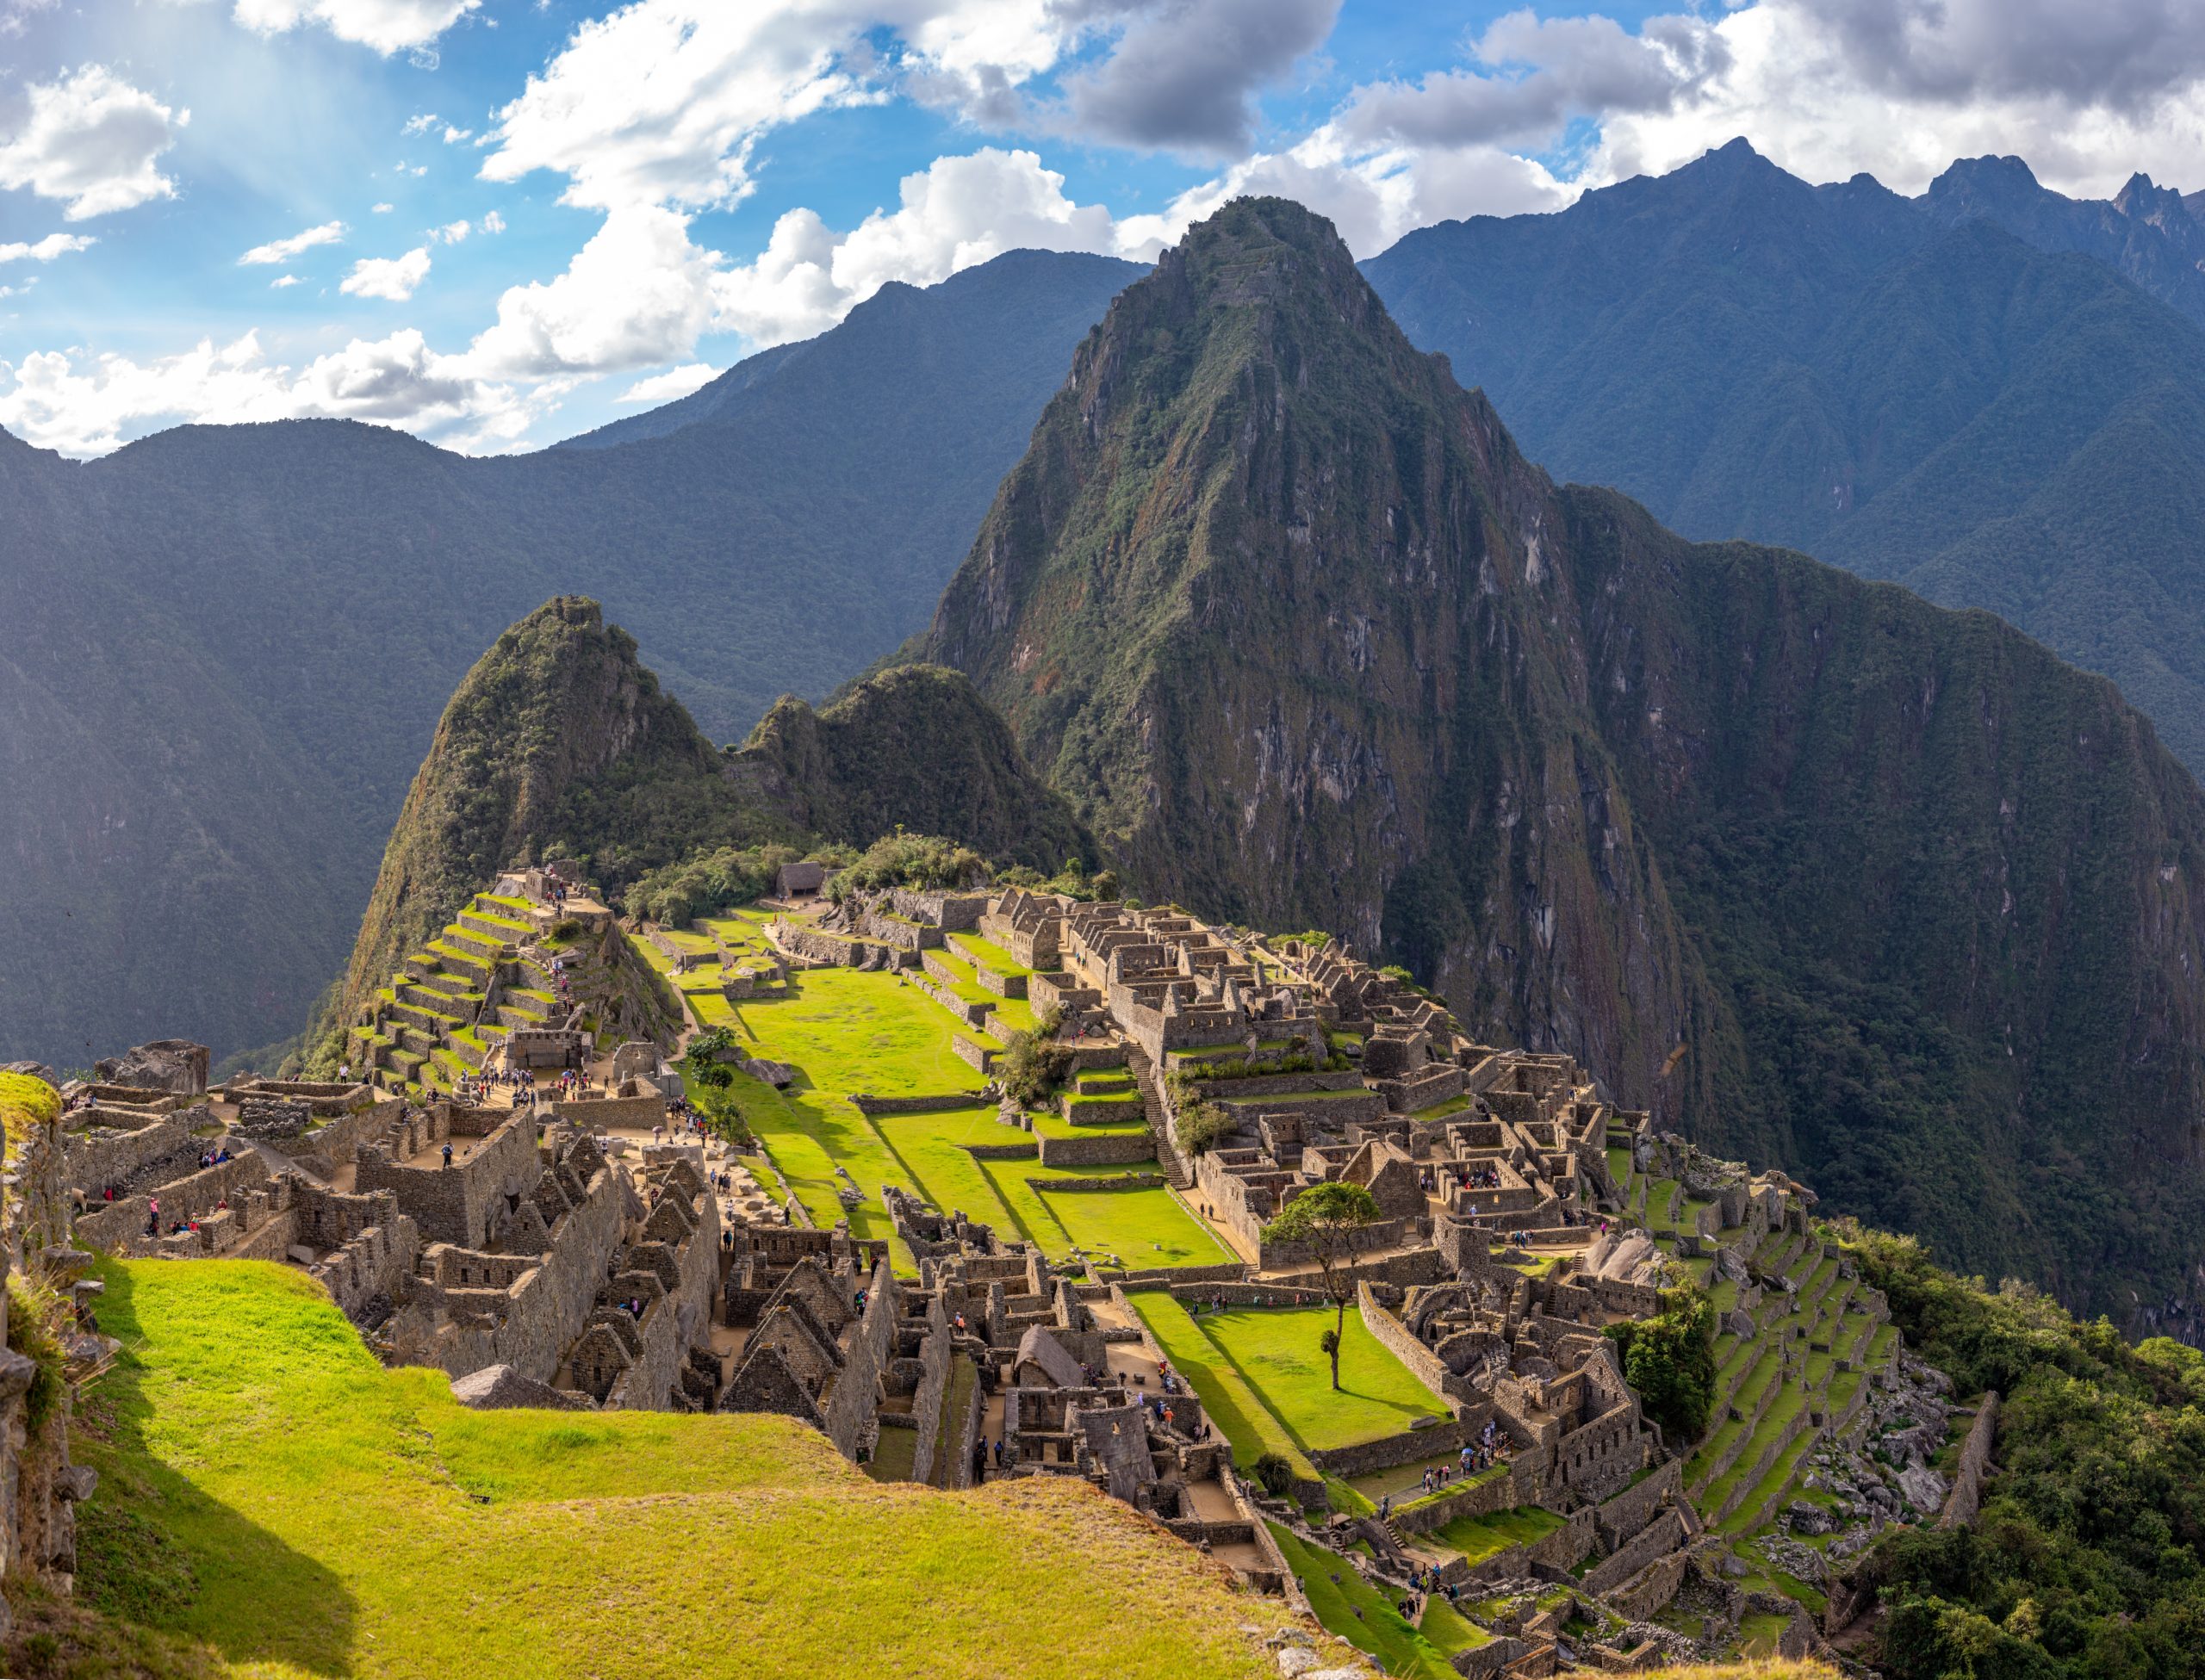 Evite Machu Picchu: Itamaraty desaconselha visita a uma das 7 maravilhas do mundo